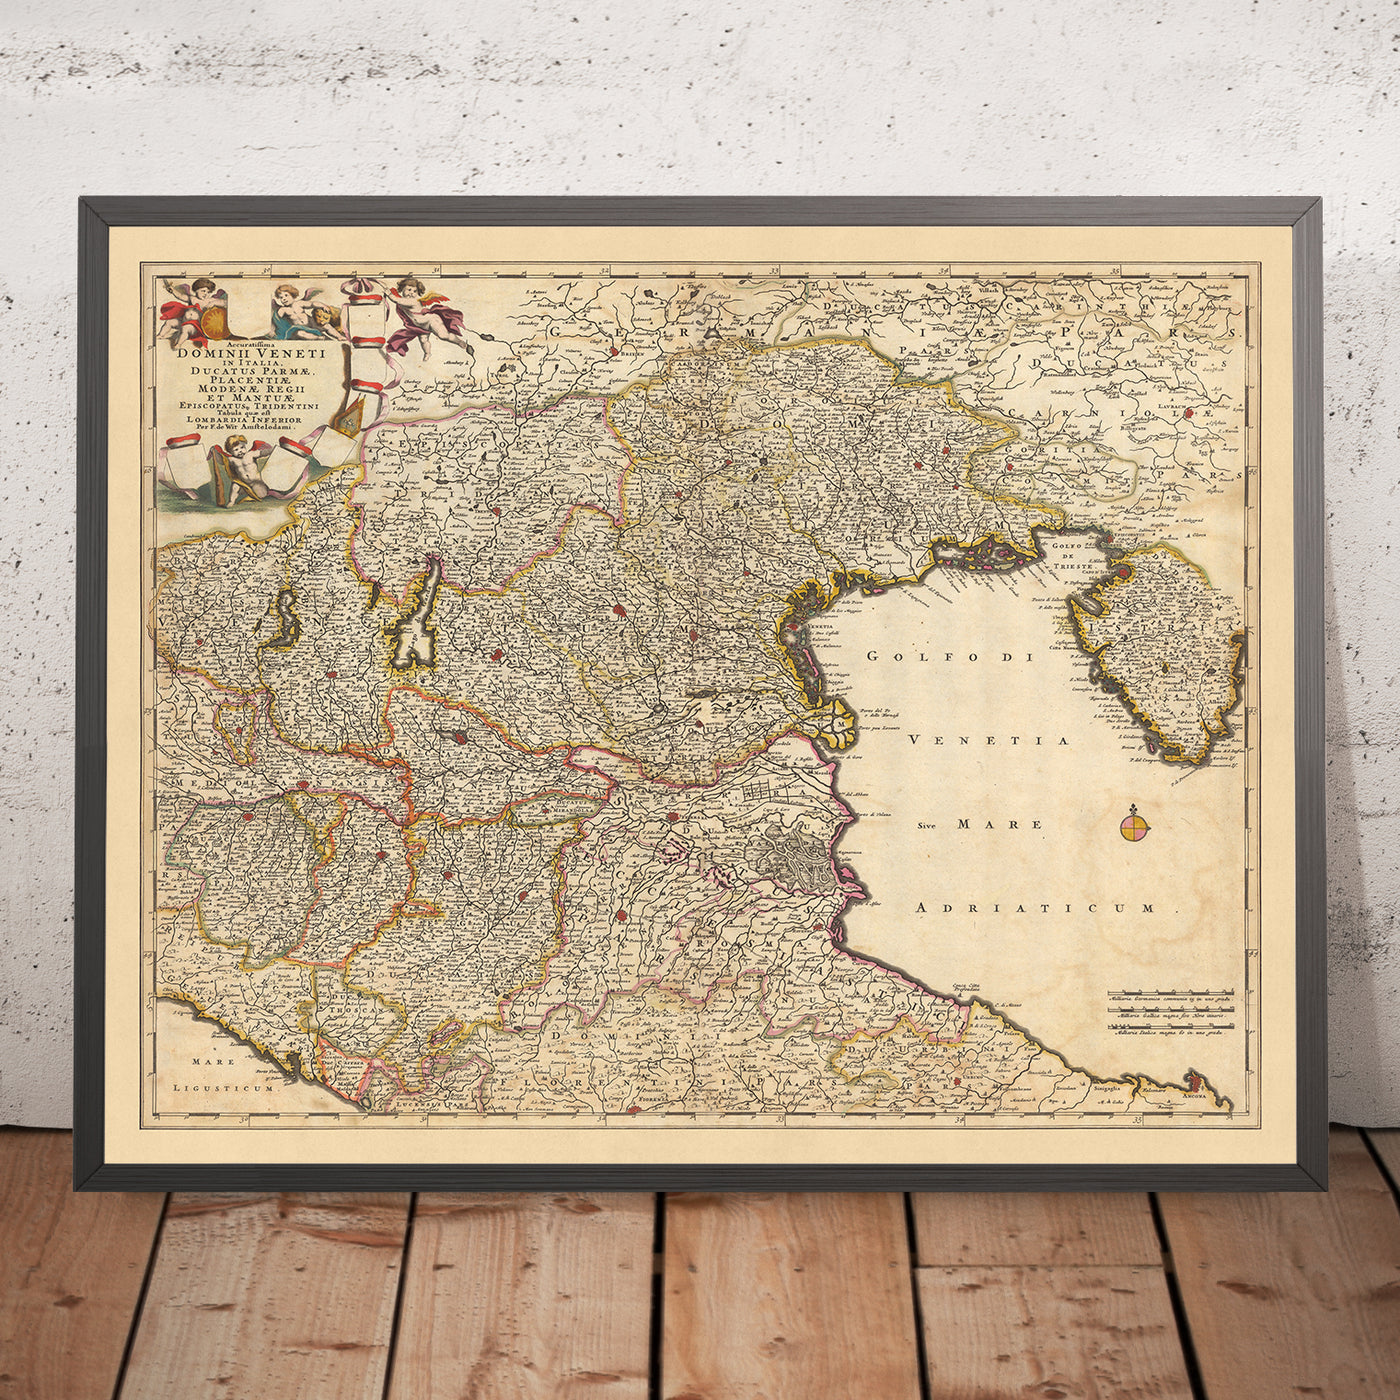 Alte Karte der venezianischen Herrschaft von Visscher, 1690: Bologna, Florenz, Venedig, San Marino, Parco Alto Garda Bresciano